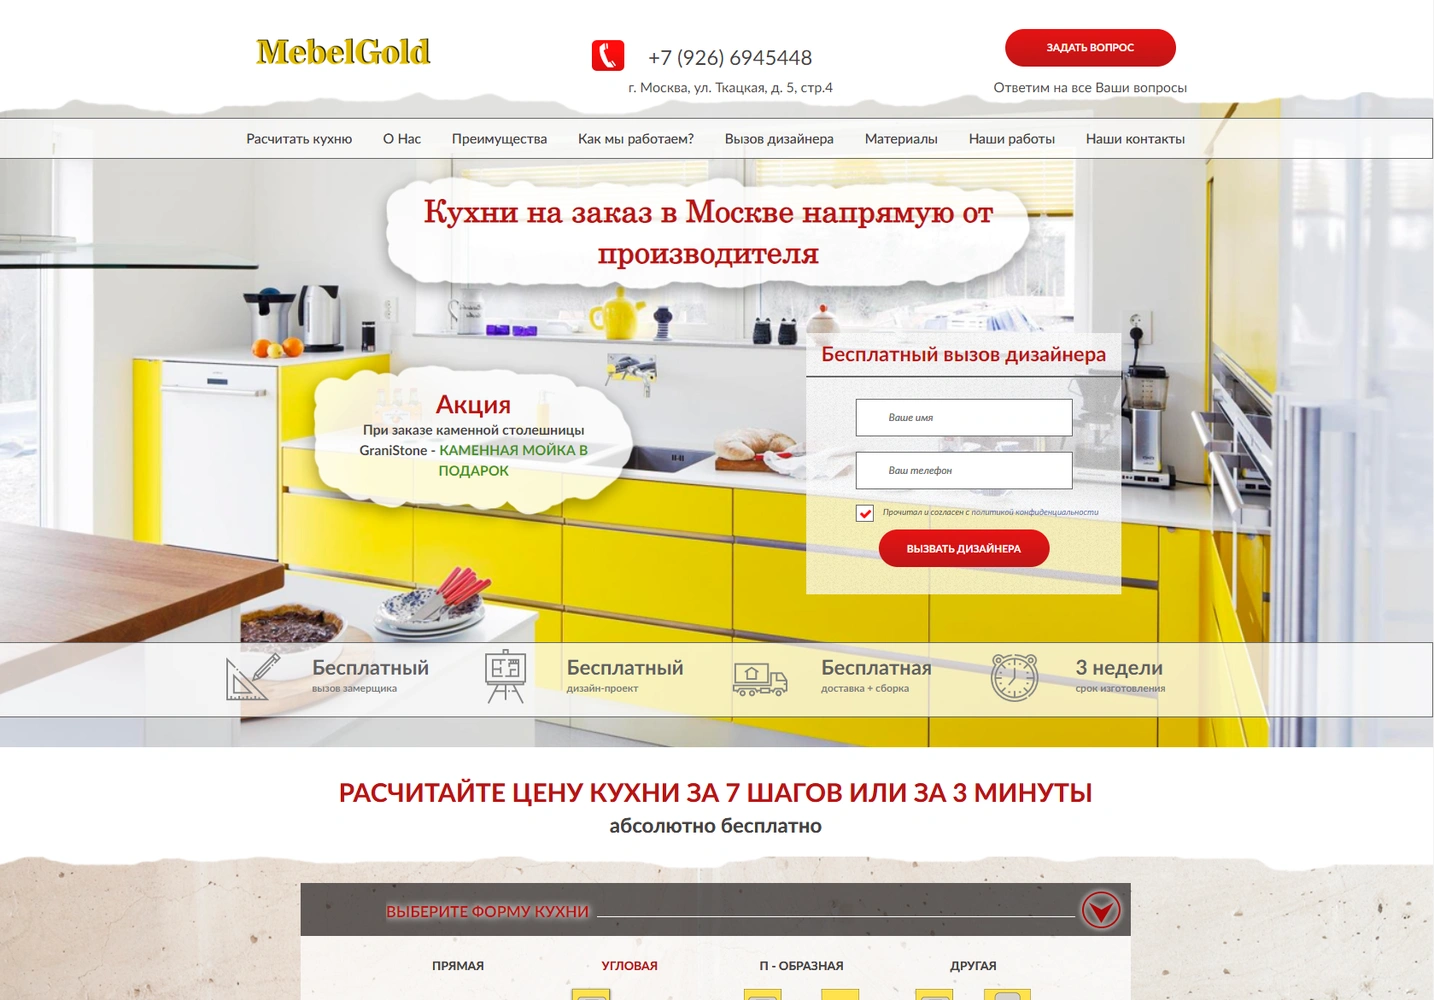 Мебель Голд v1 - продажа мебели в Москве